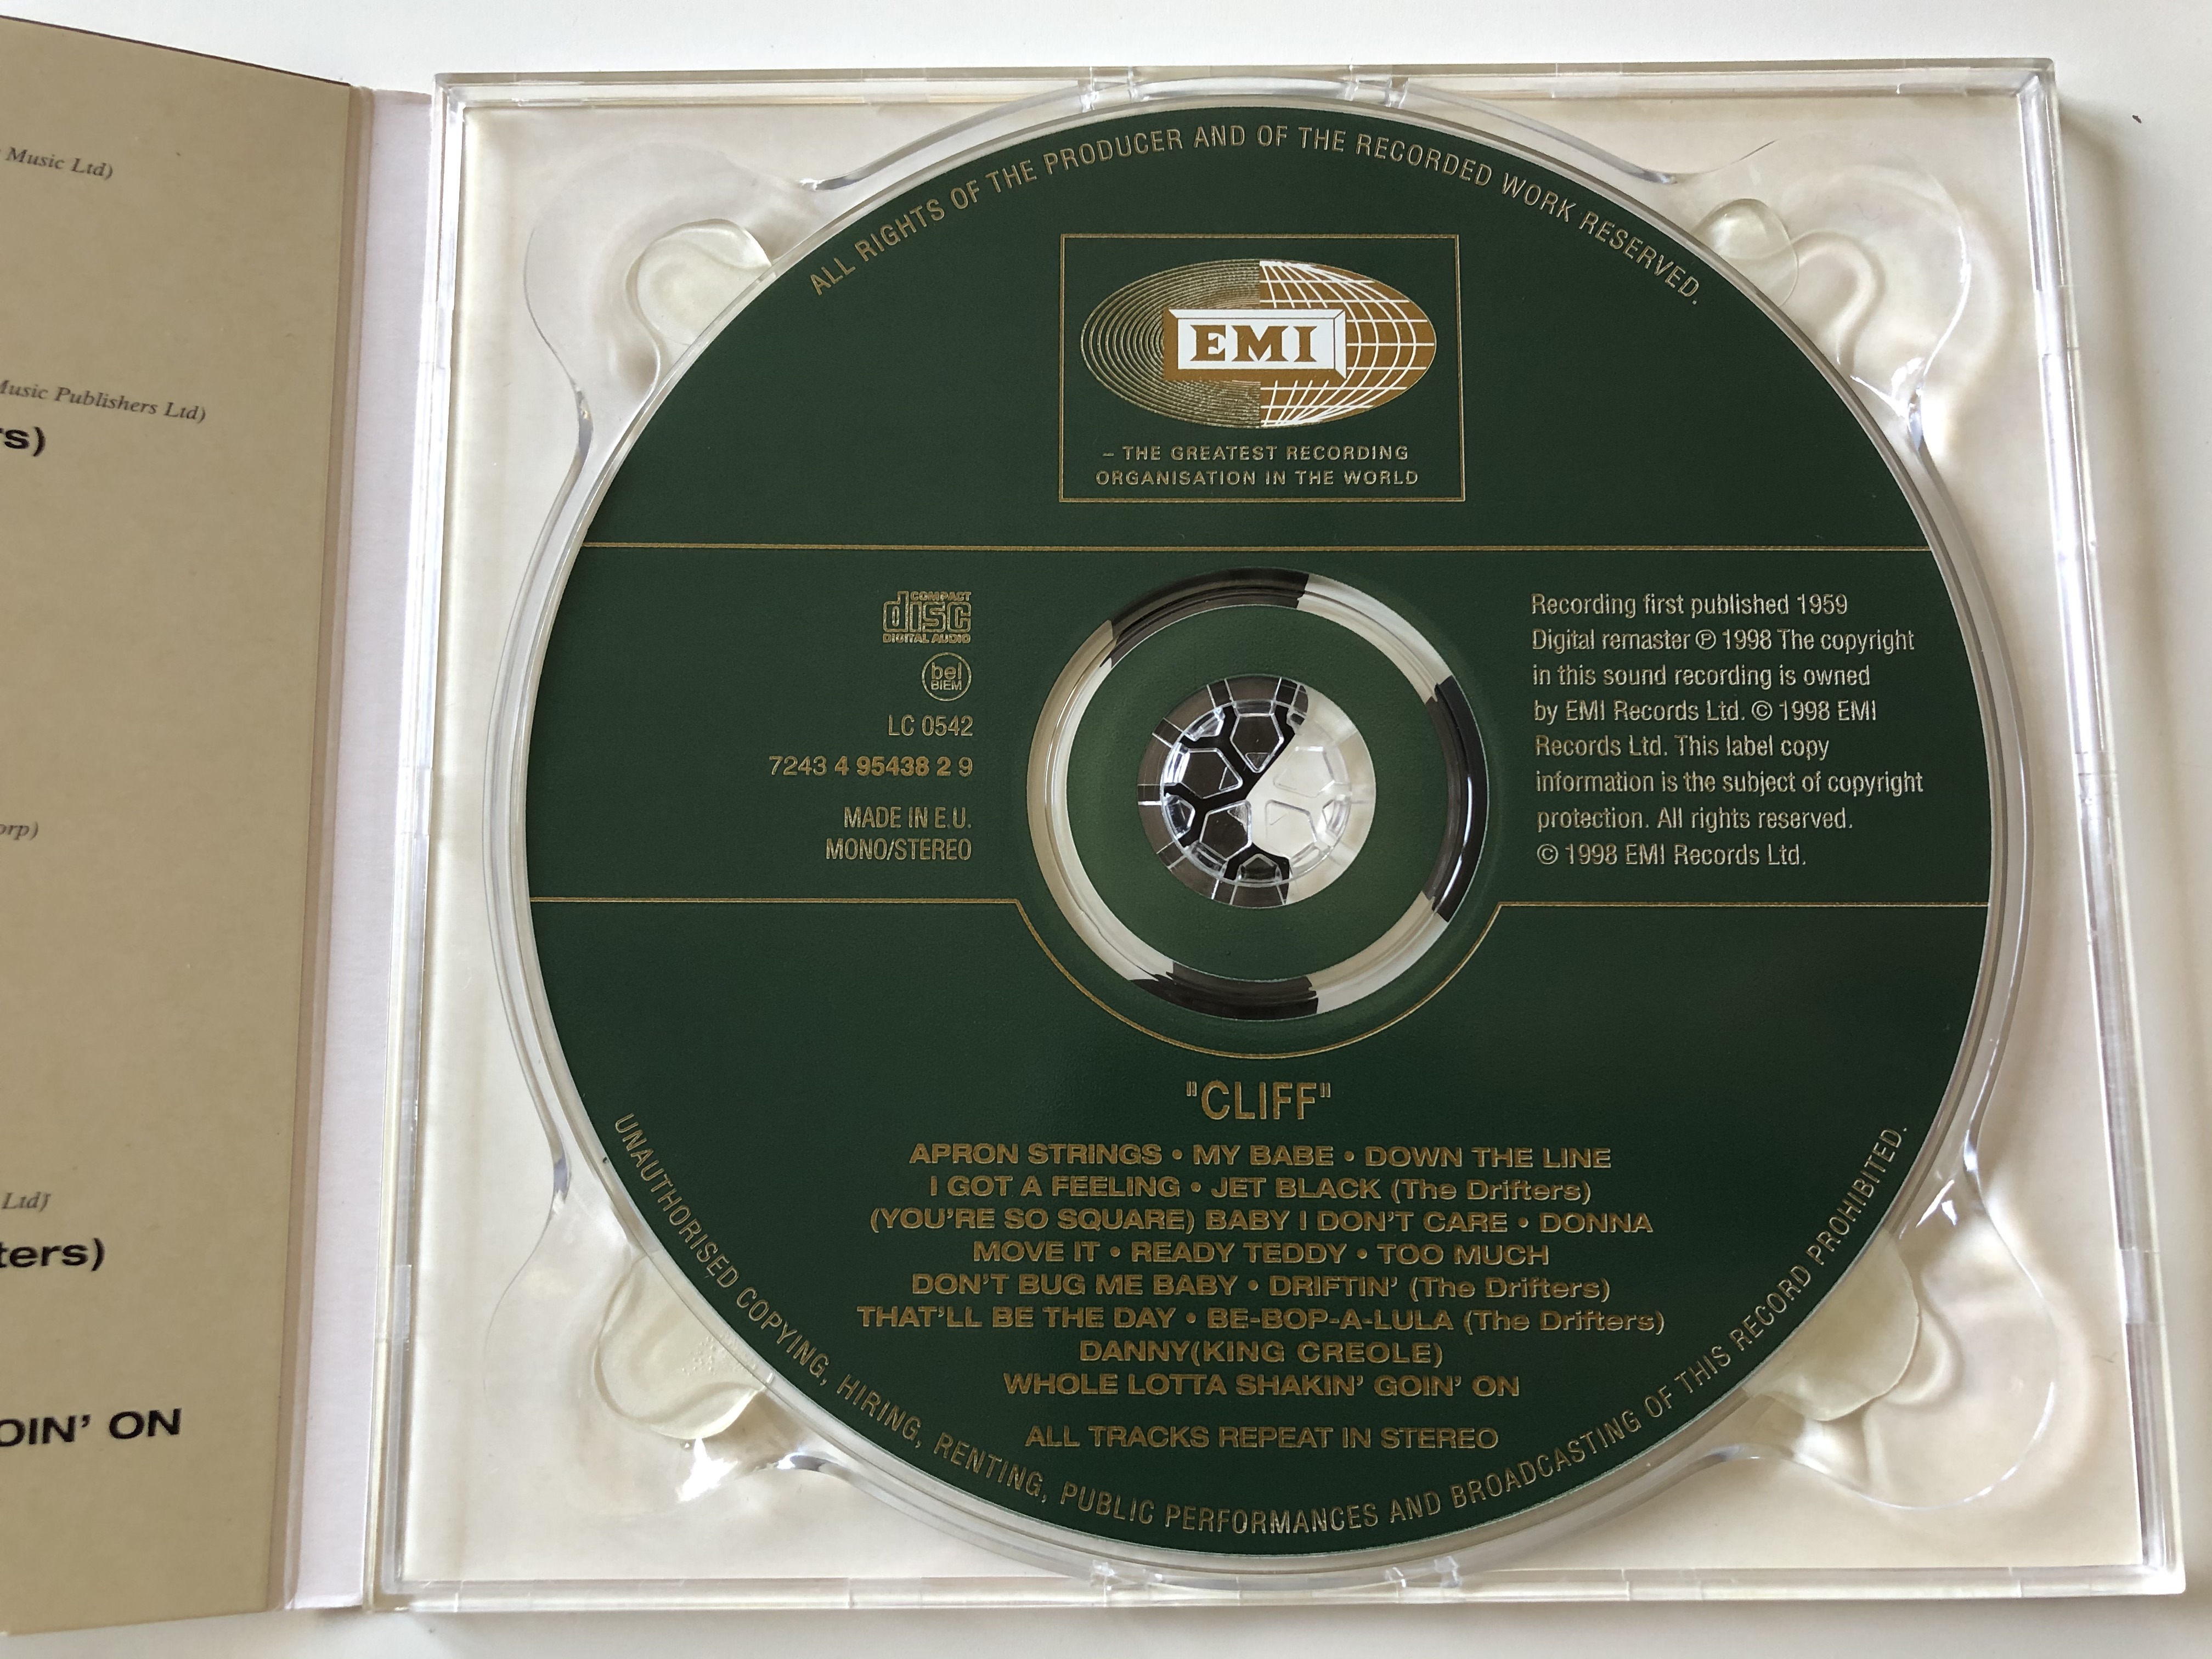 cliff-emi-audio-cd-1998-mono-stereo-724349543829-3-.jpg